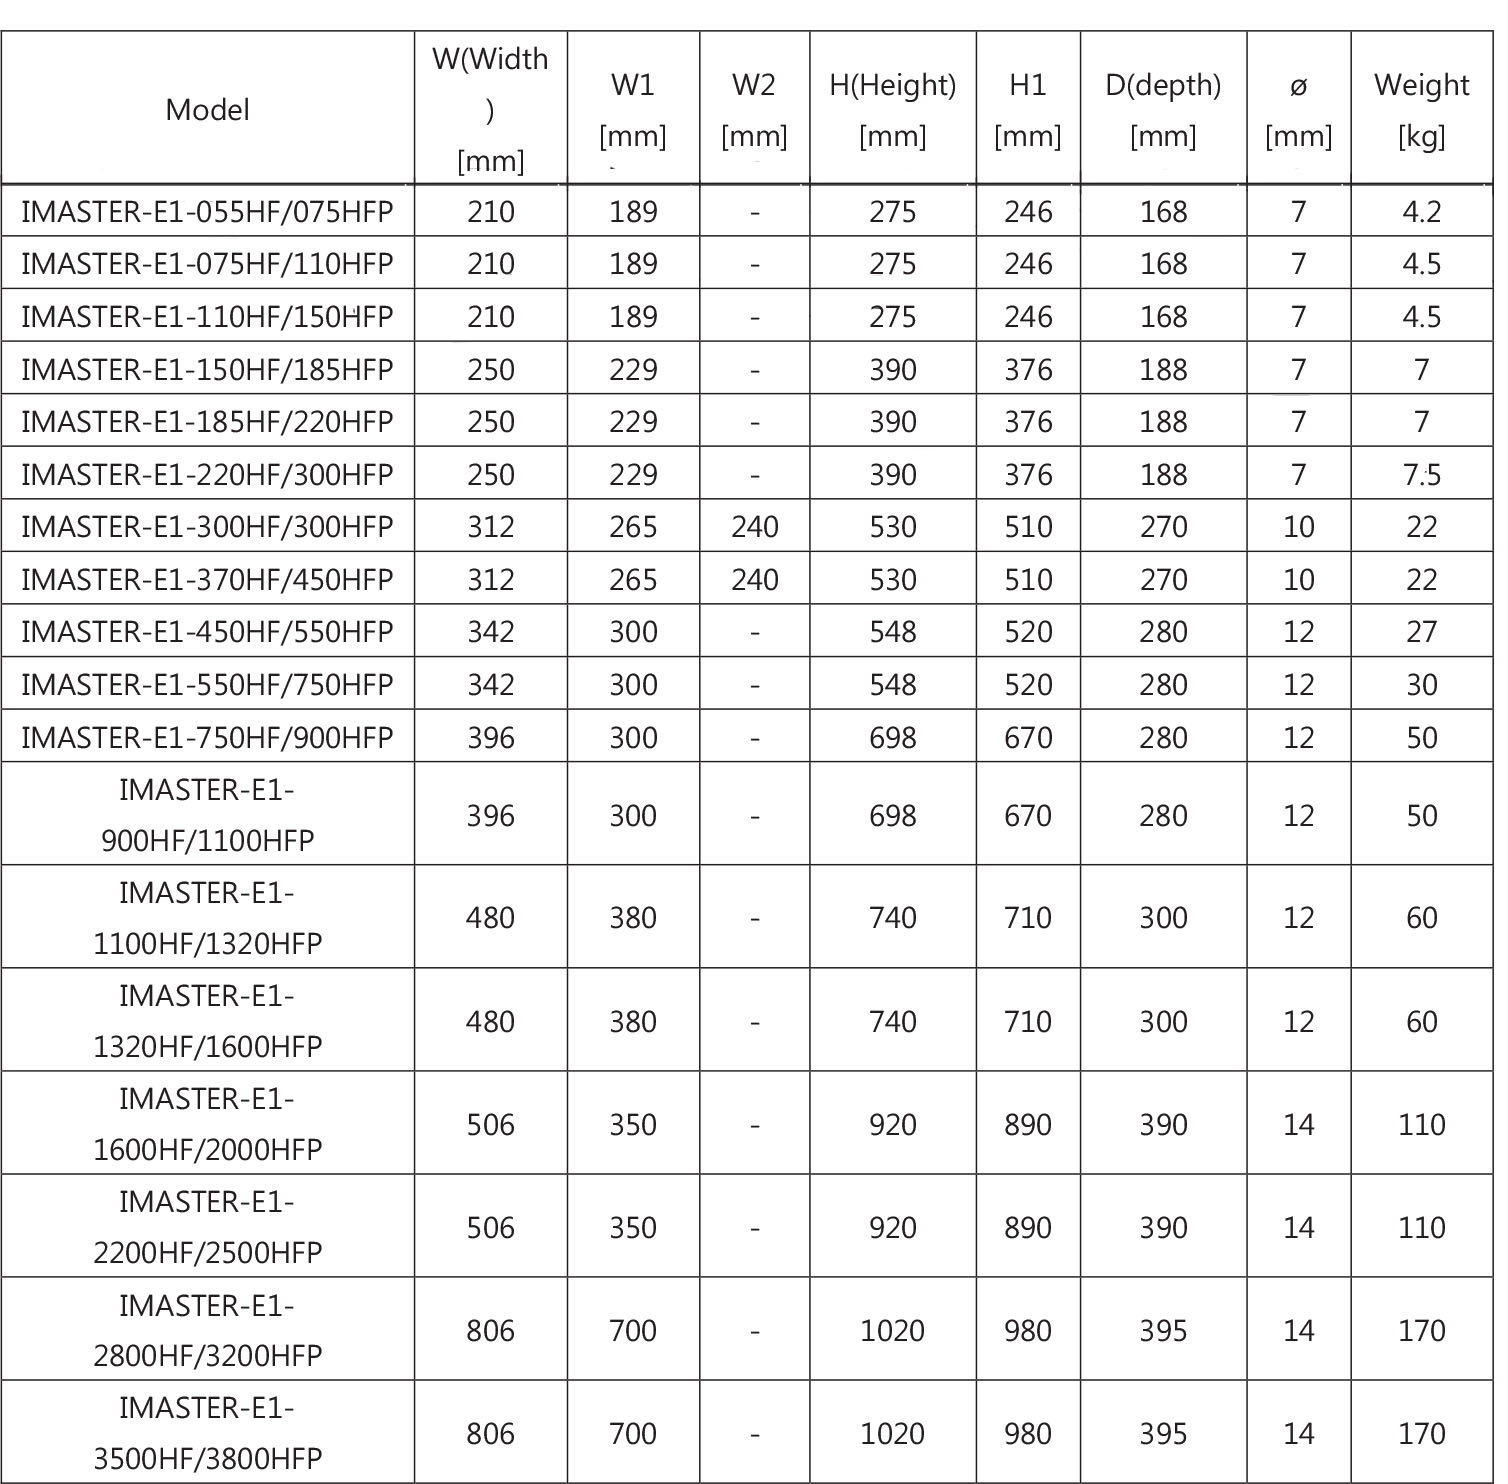 جدول ابعاد اینورتر آیمستر سری E1 مدل E1-2800HF/3200HFP